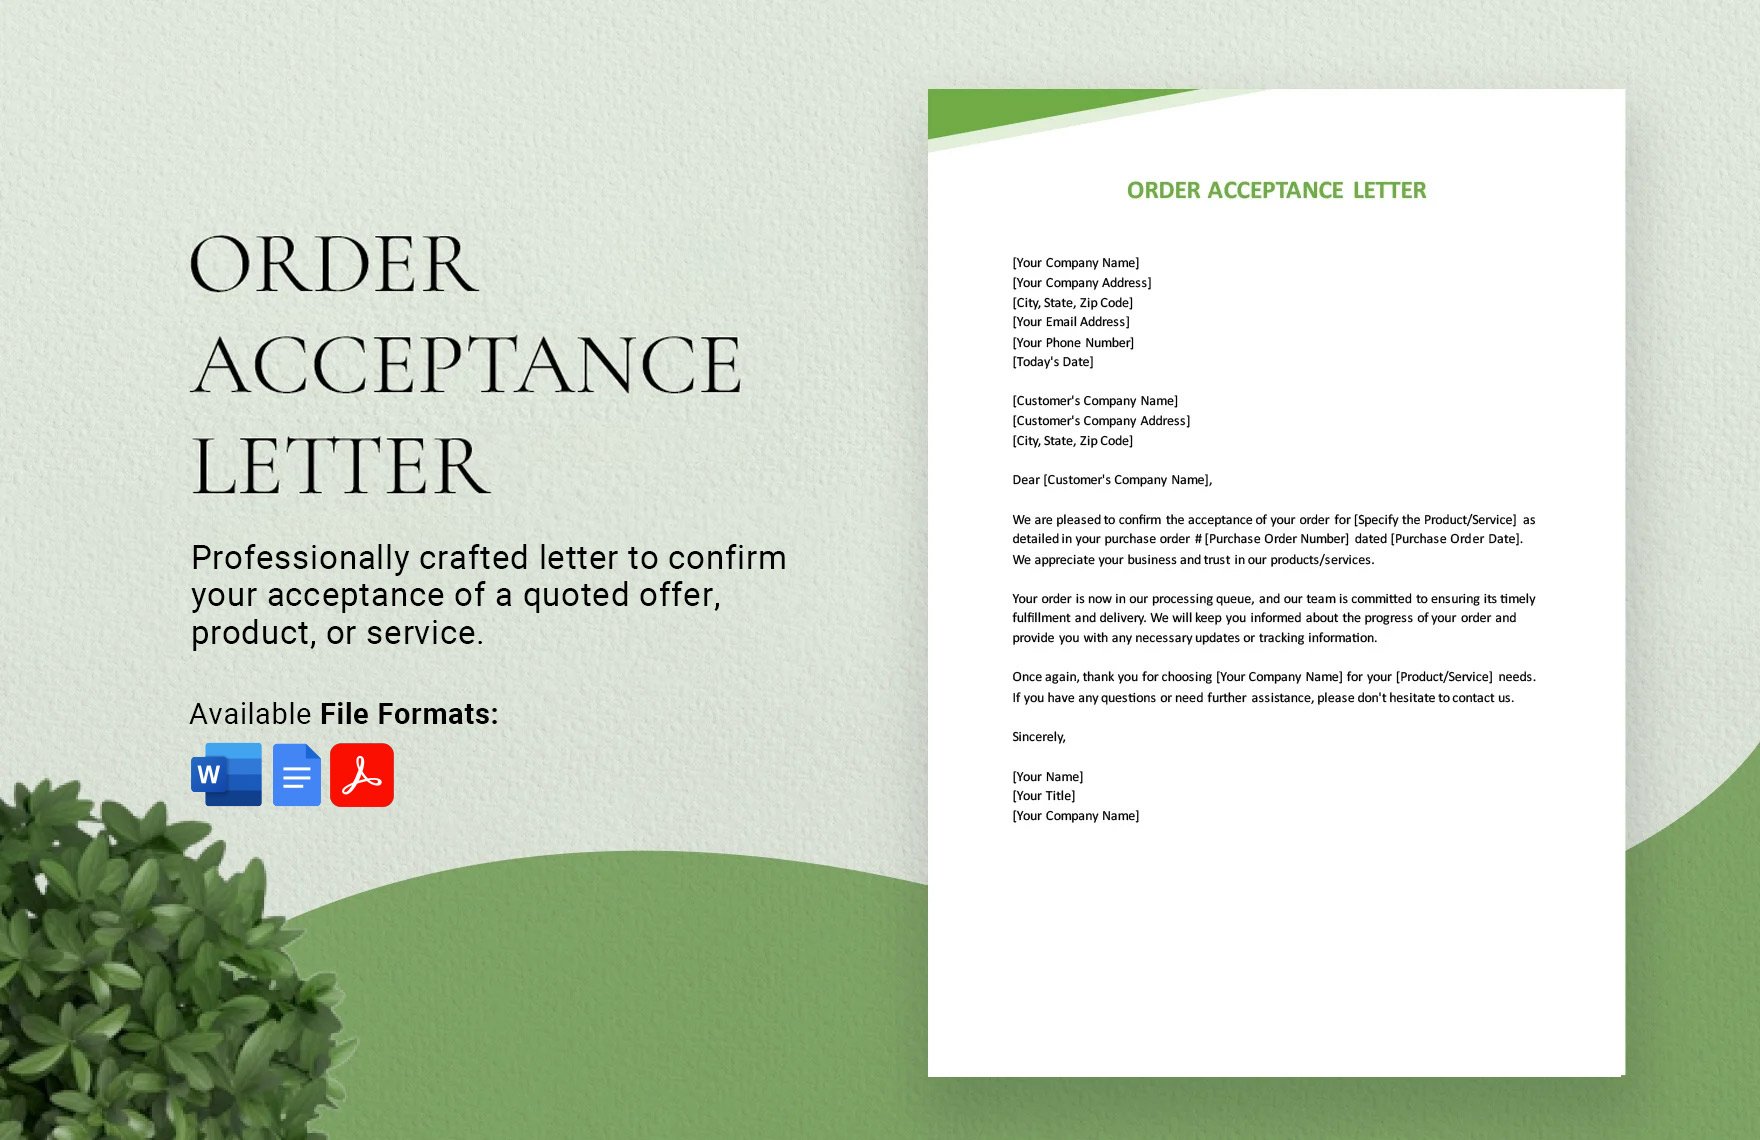 Order Acceptance Letter in Word, Google Docs, PDF